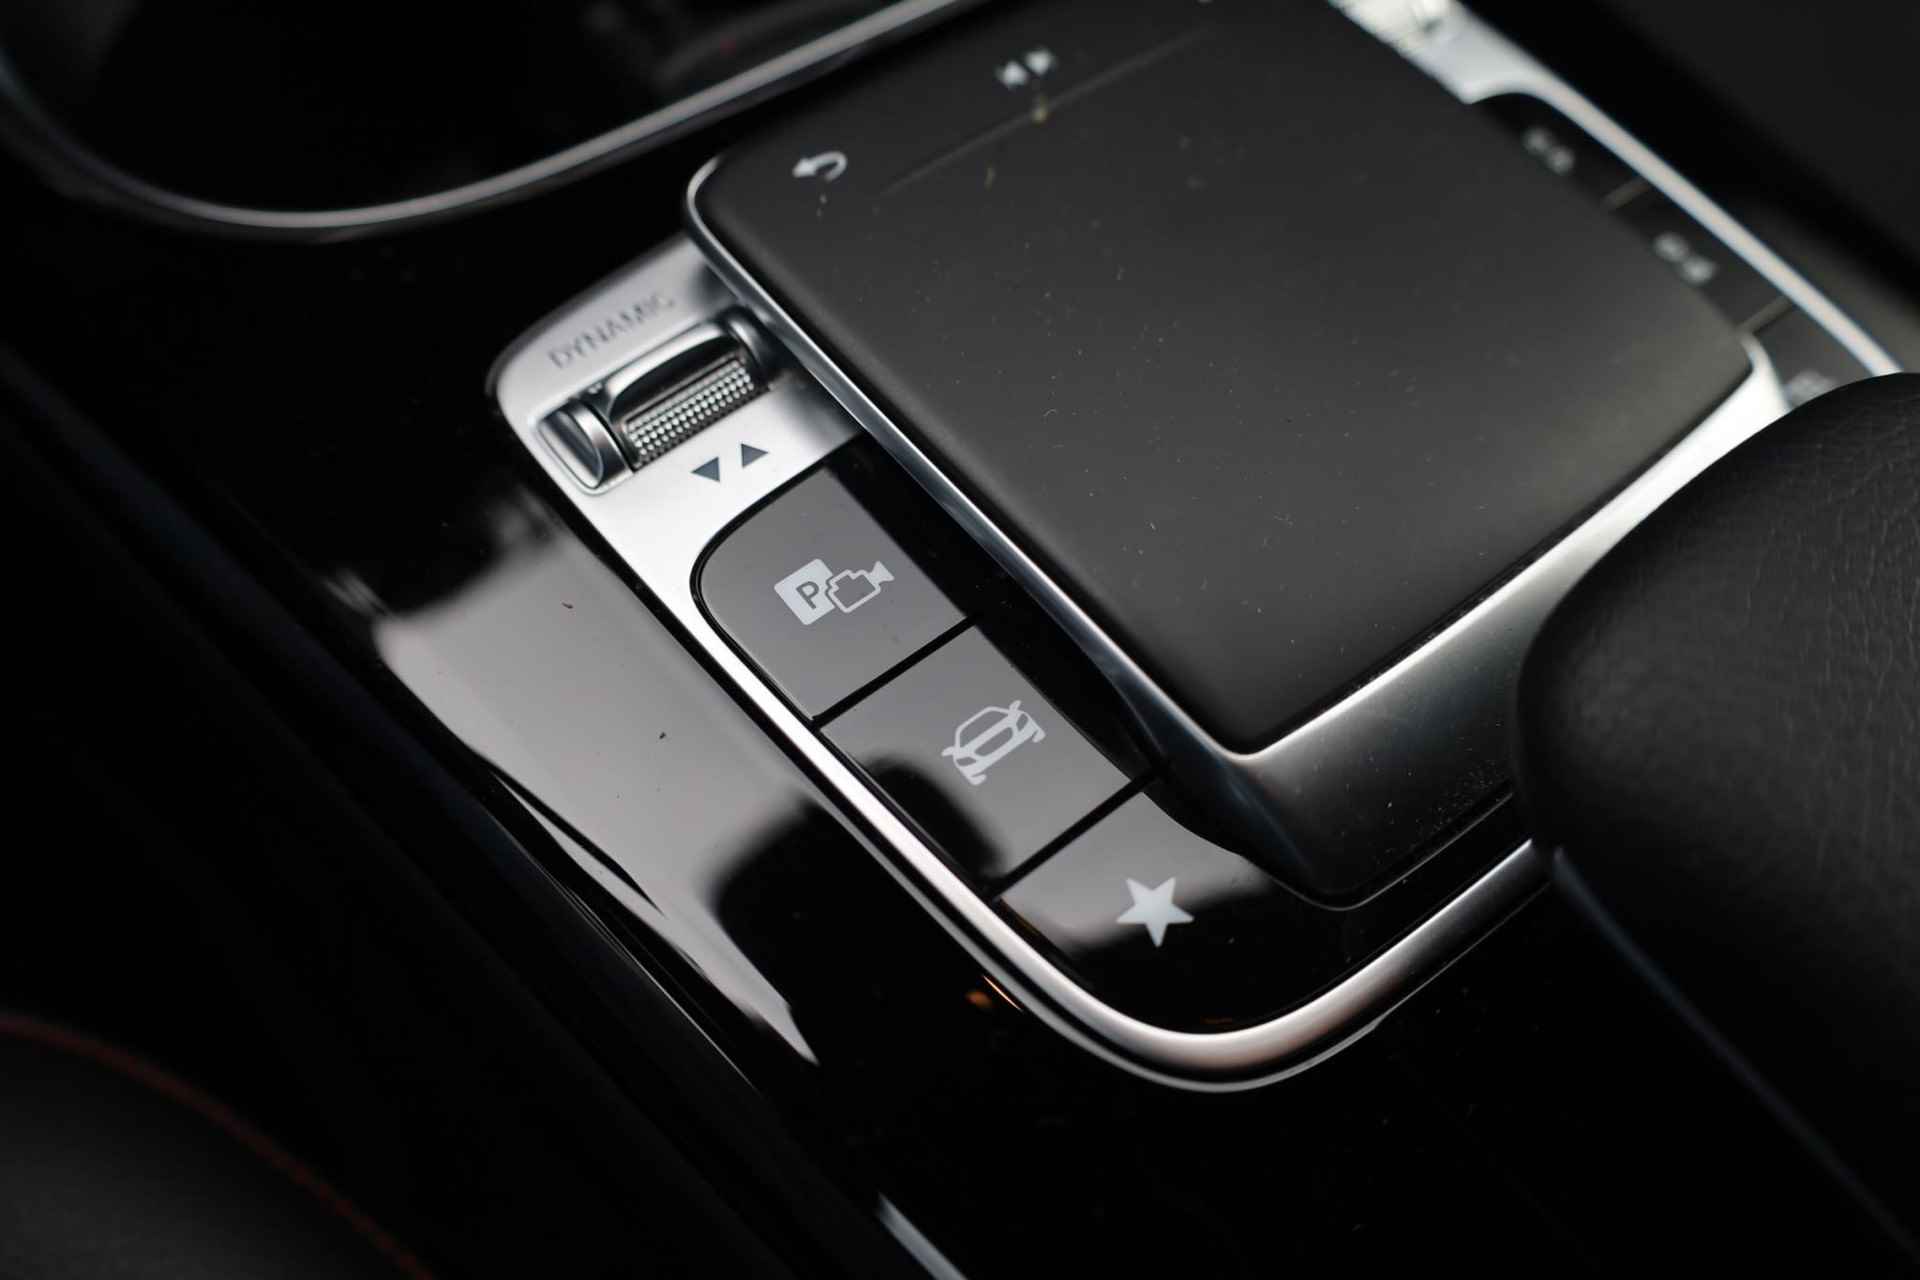 Mercedes-Benz A-klasse 200 Business Solution AMG 163PK / 120kW automaat, Leder / alcantara, winterset LMV, digitaal dashboard, navigatie, LED verlichting voor en achter, 18" LMV, stoelverwarming, parkeersensoren voor en achter, AMG bumpers - 34/44